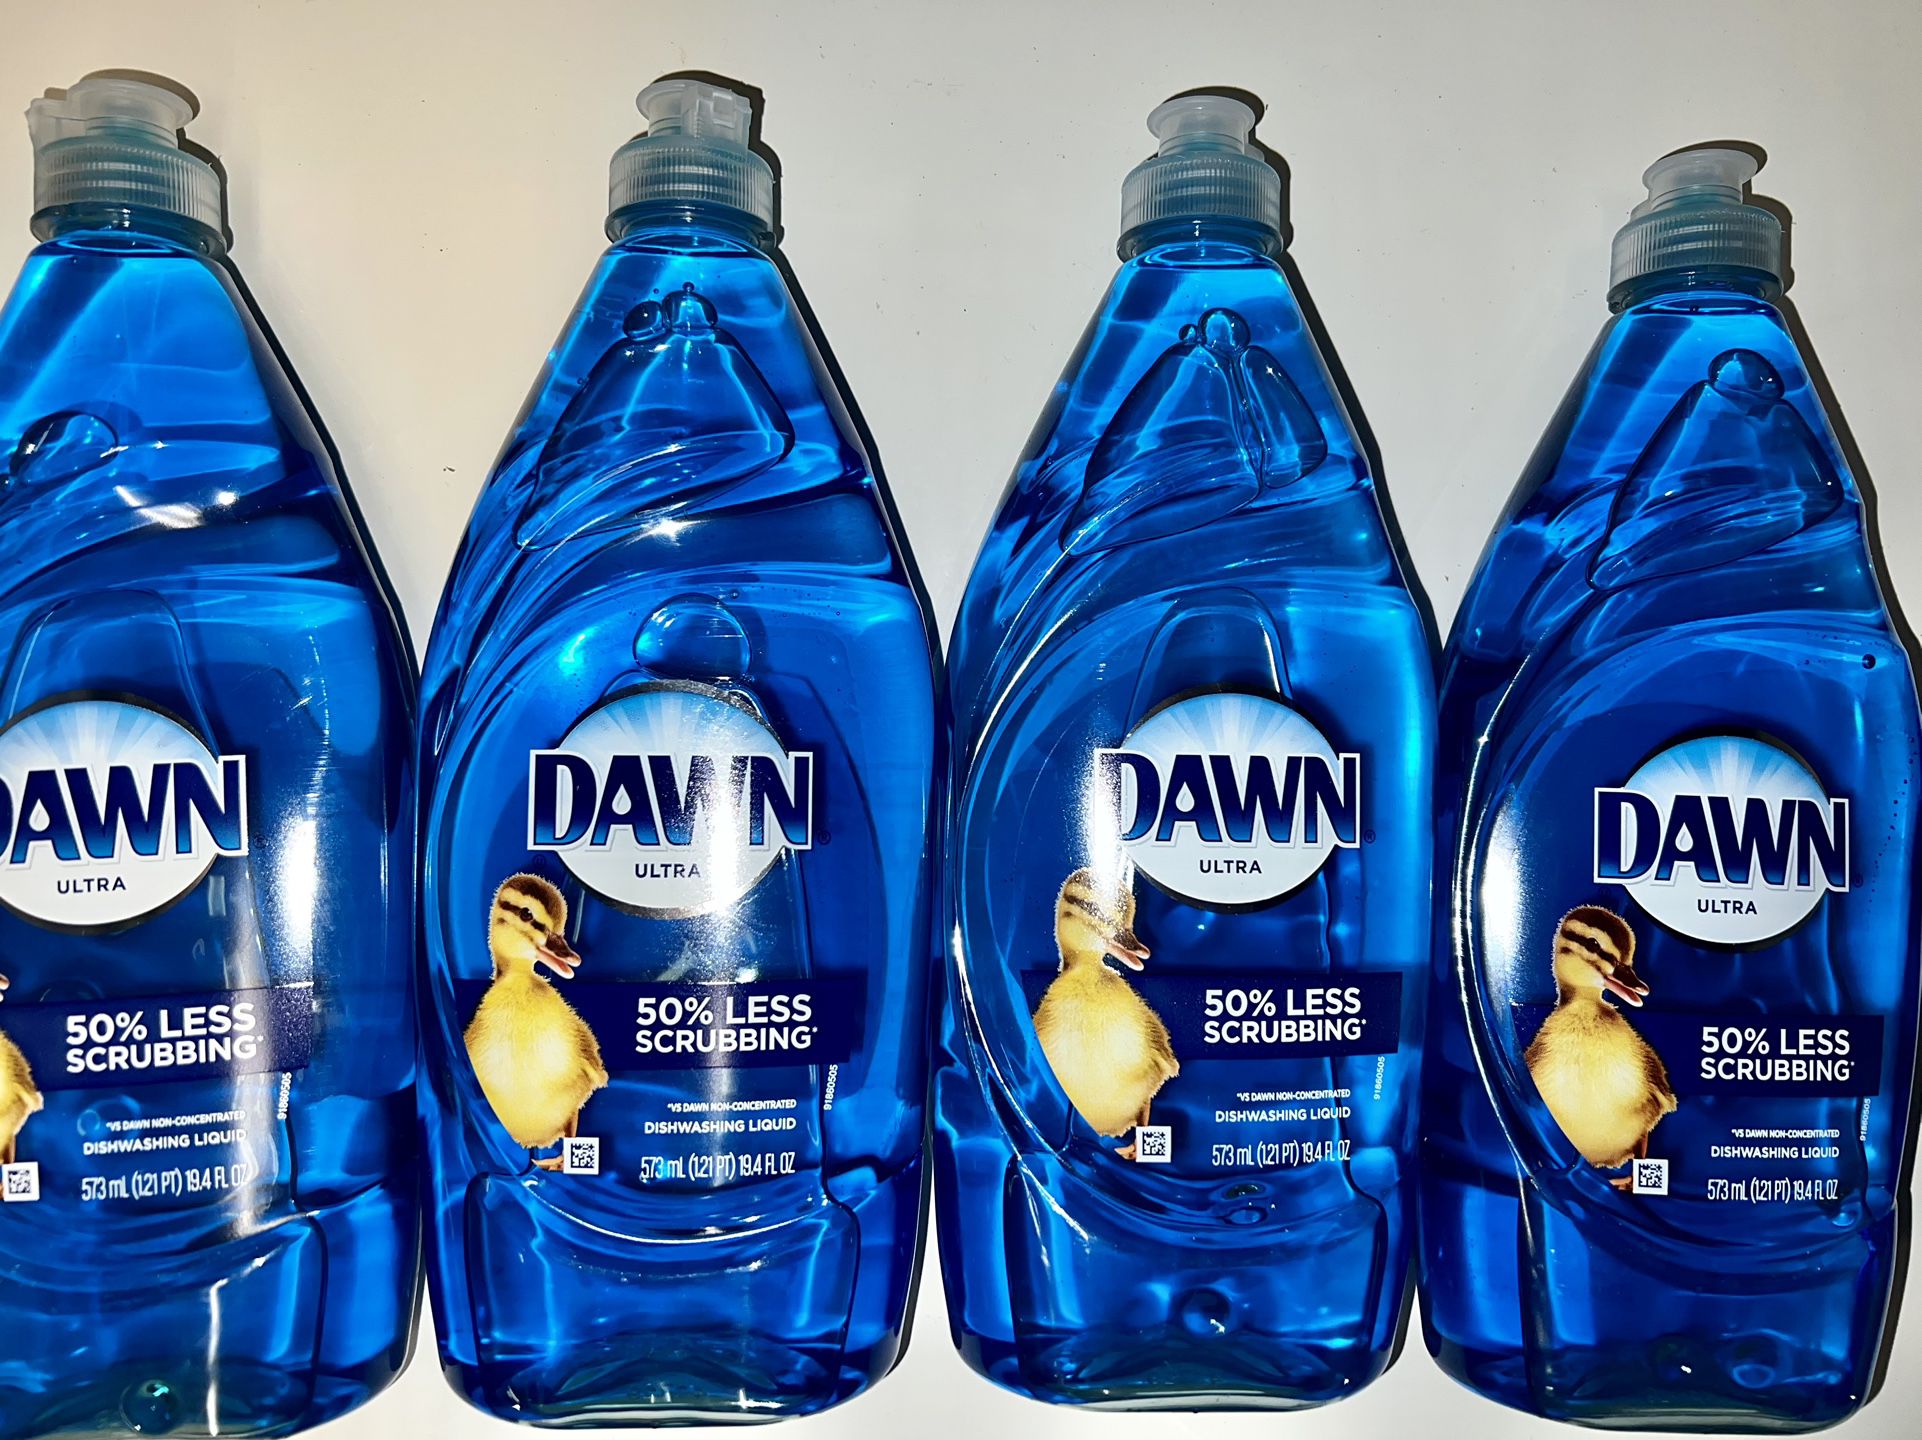 Dawn Ultra Dishwashing Liquid Dish Soap Original